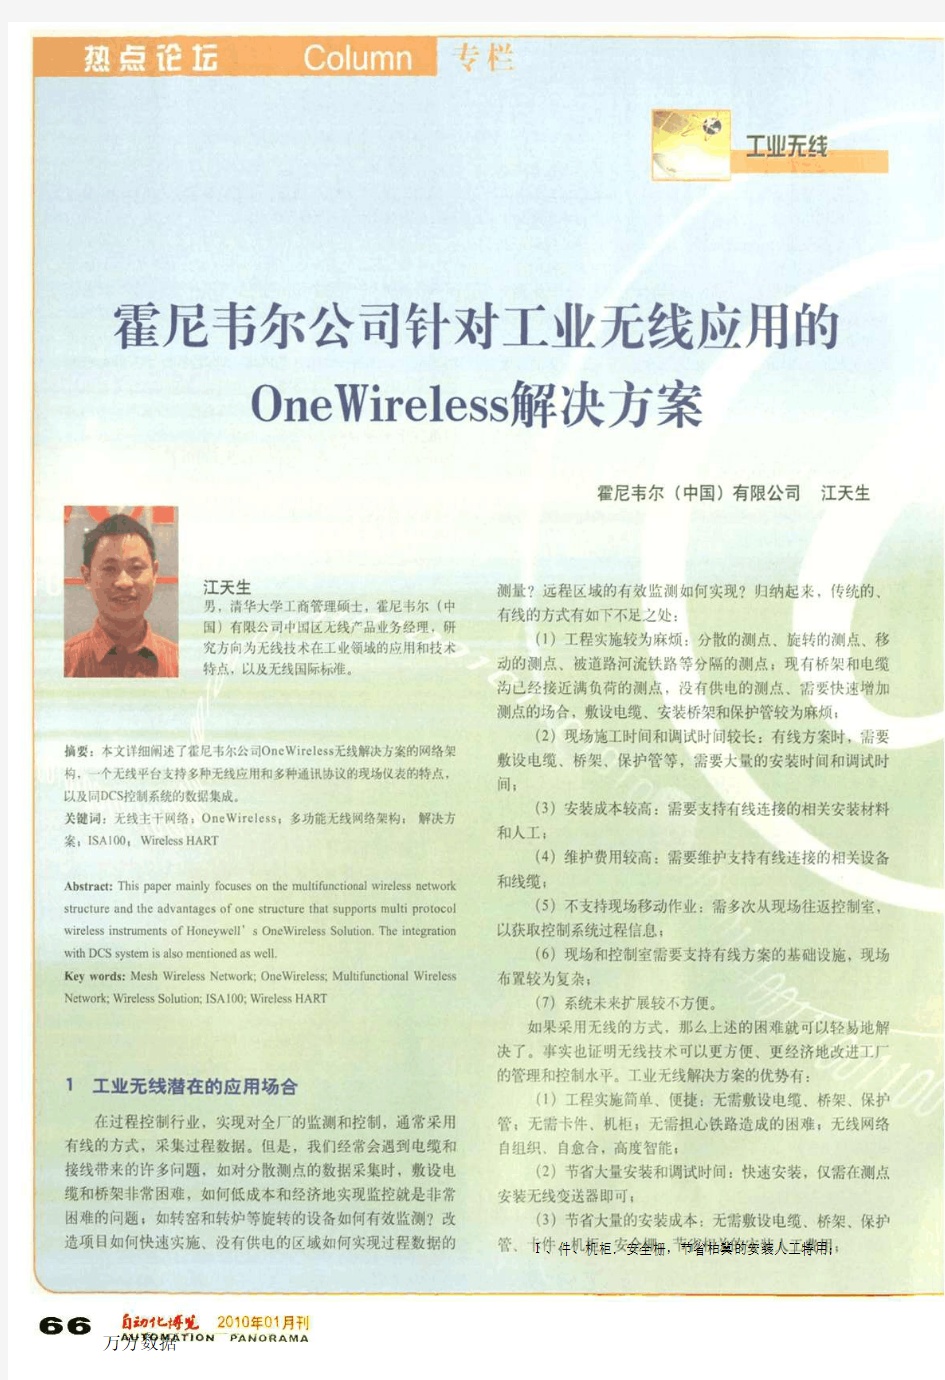 公司针对工业无线应用的OneWireless解决方案